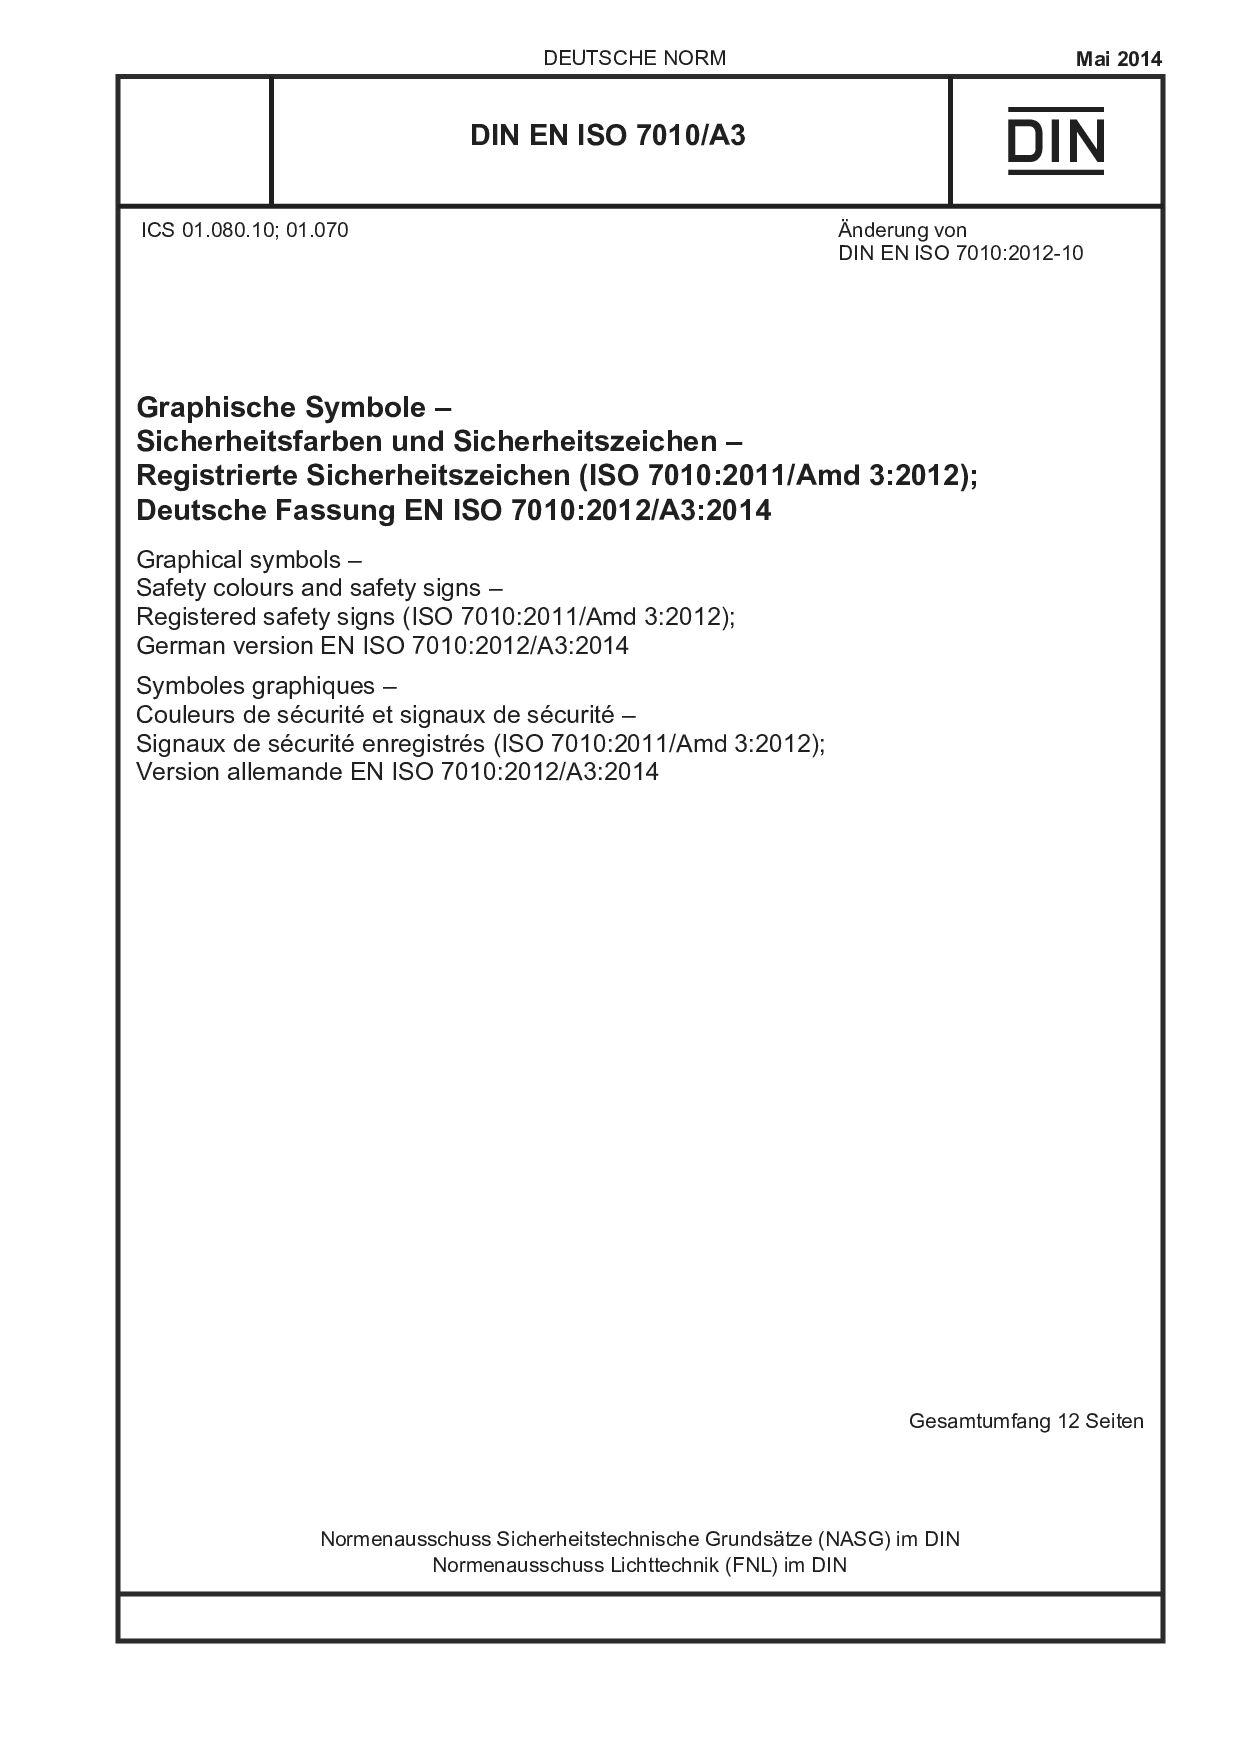 DIN EN ISO 7010/A3:2014